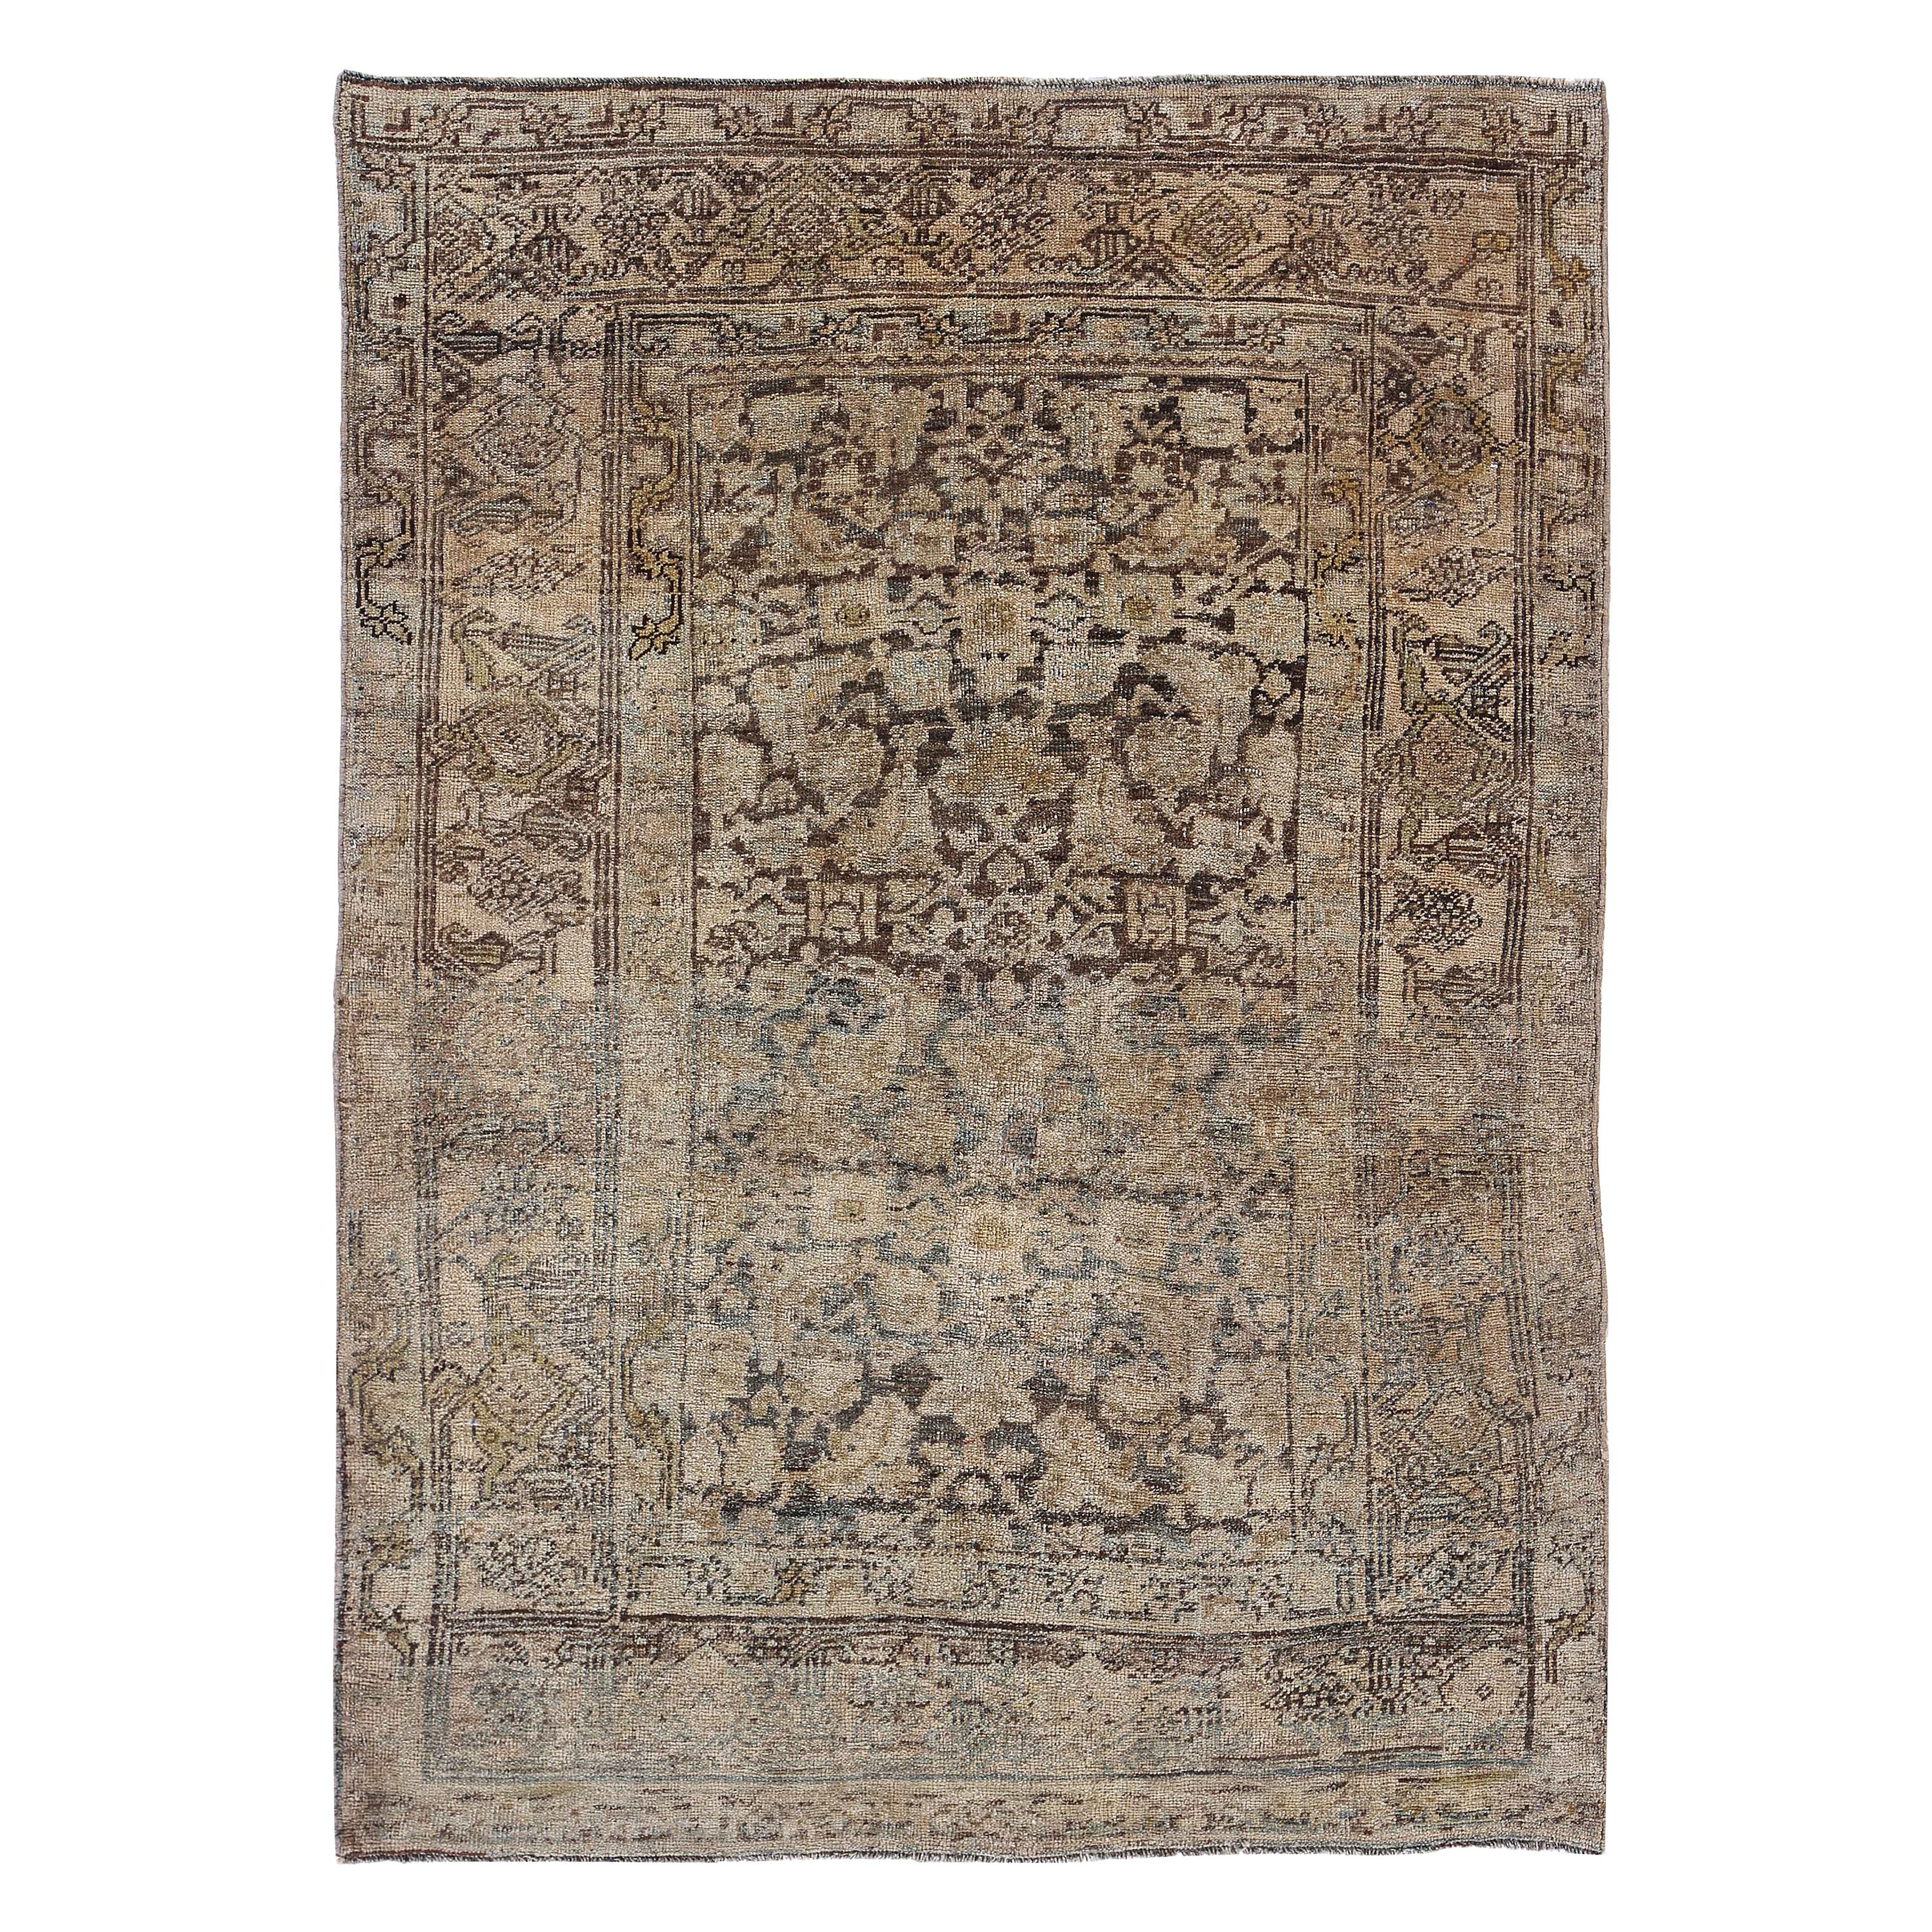 Antiker persischer Teppich im Bijar-Design